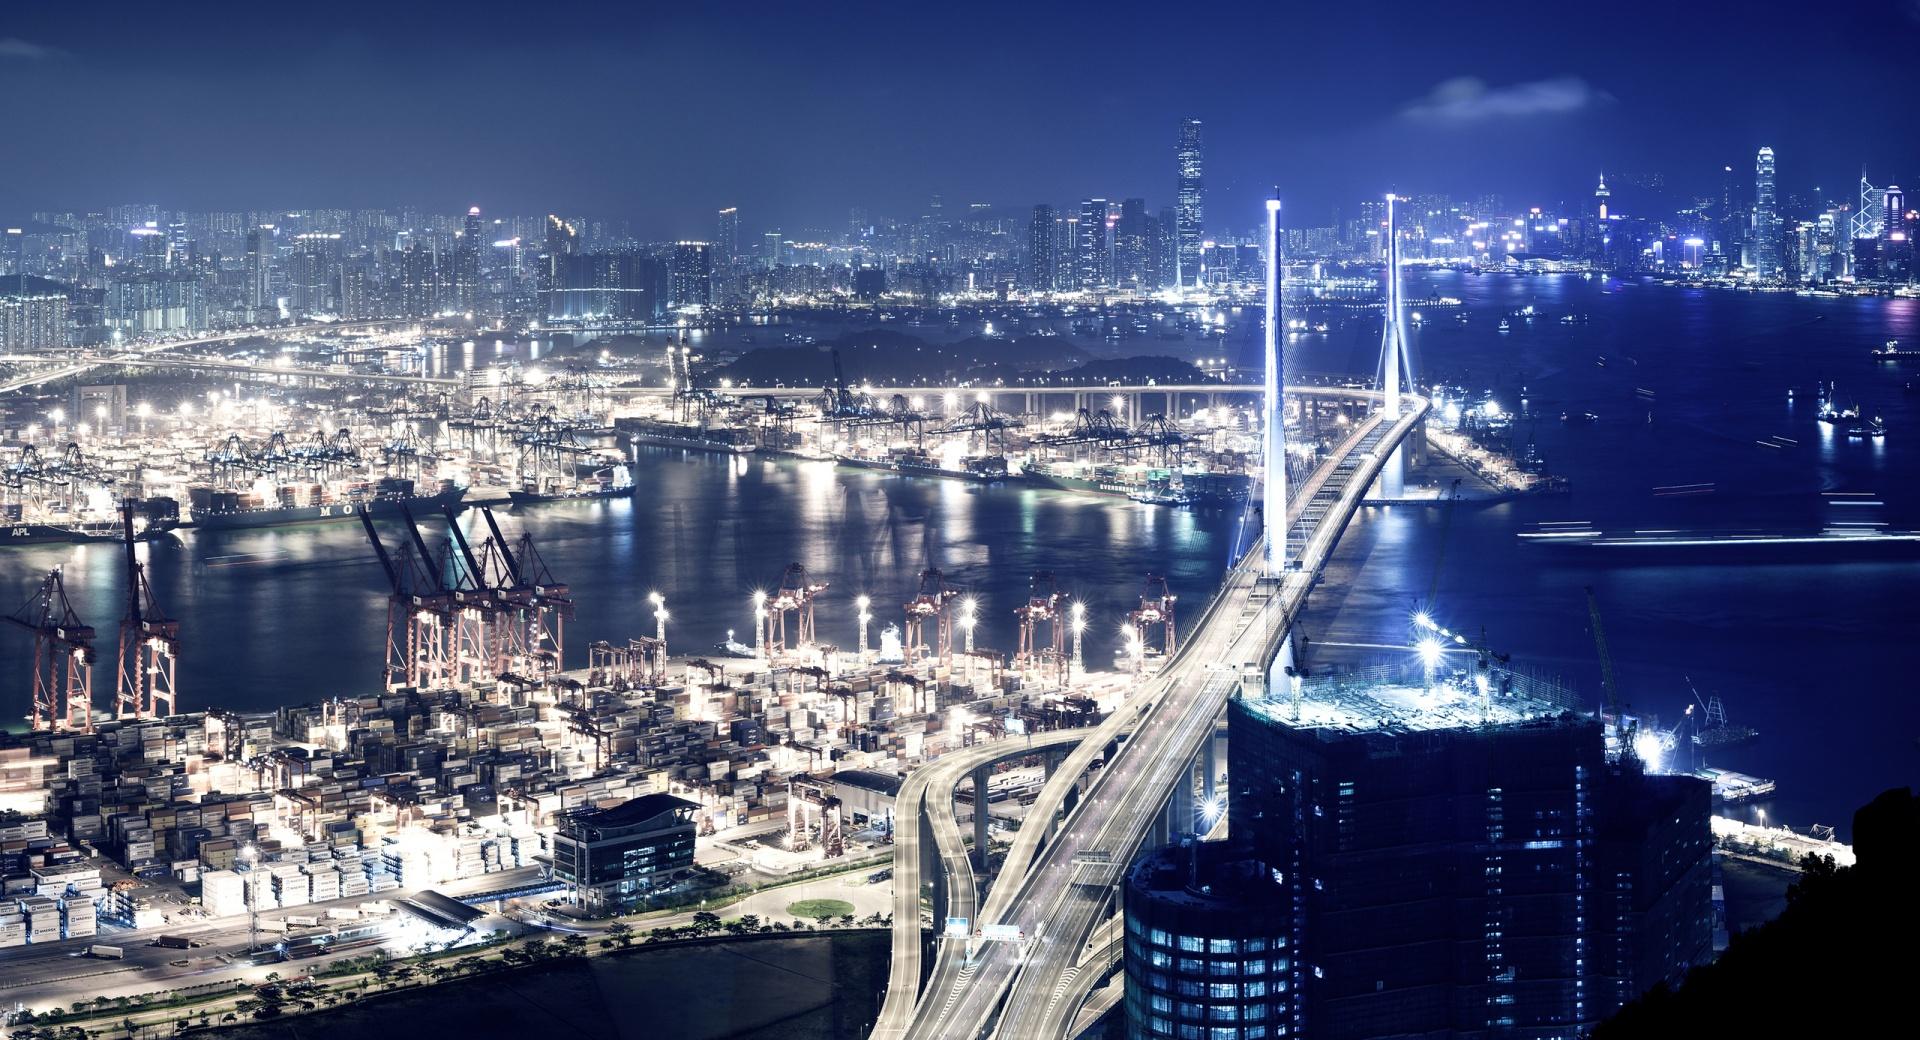 Panoramic View Of Hong Kong At Night at 1024 x 1024 iPad size wallpapers HD quality